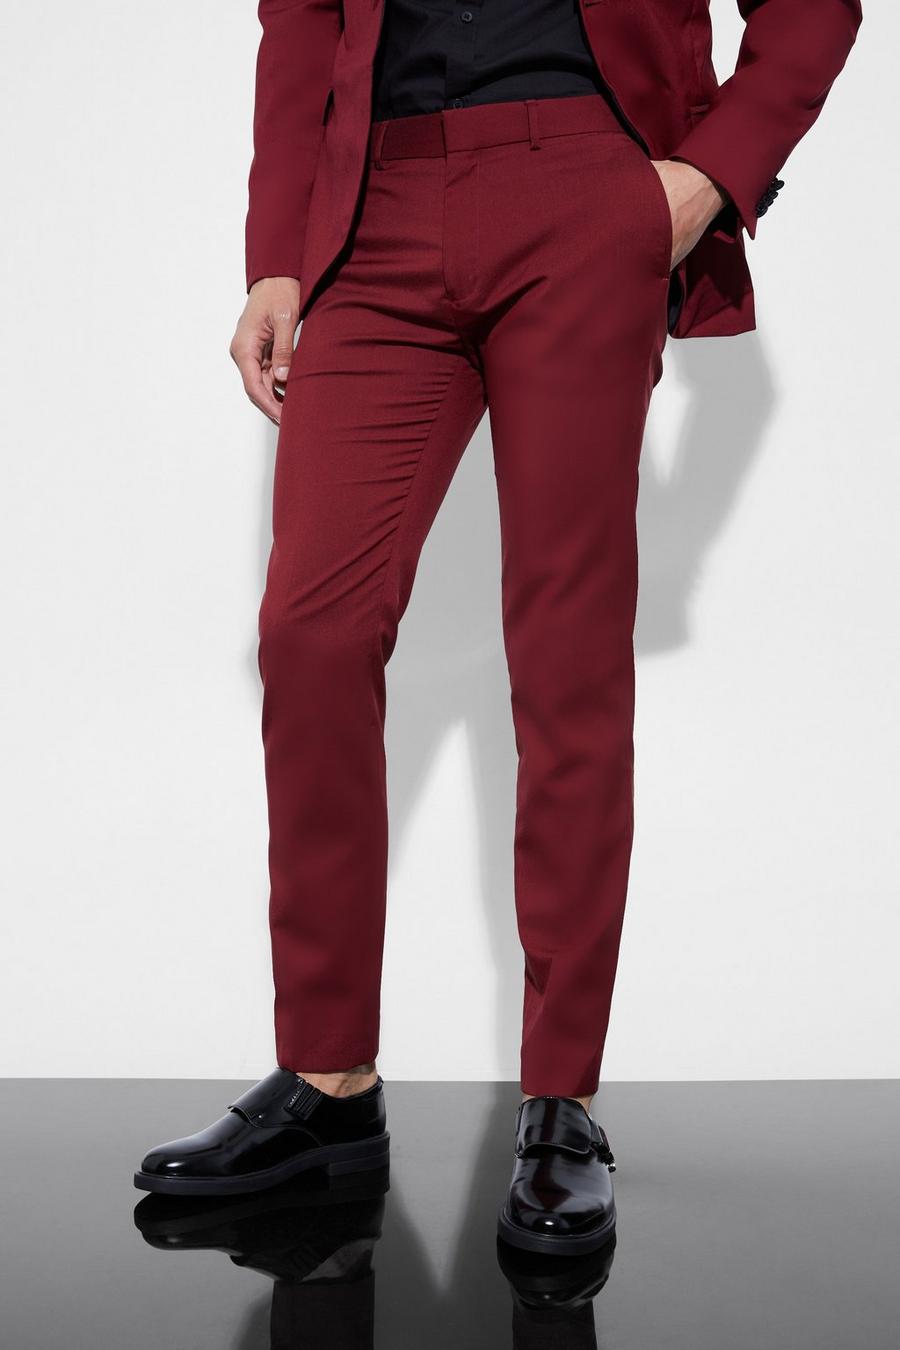 Pantalón de esmoquin pitillo, Burgundy rosso